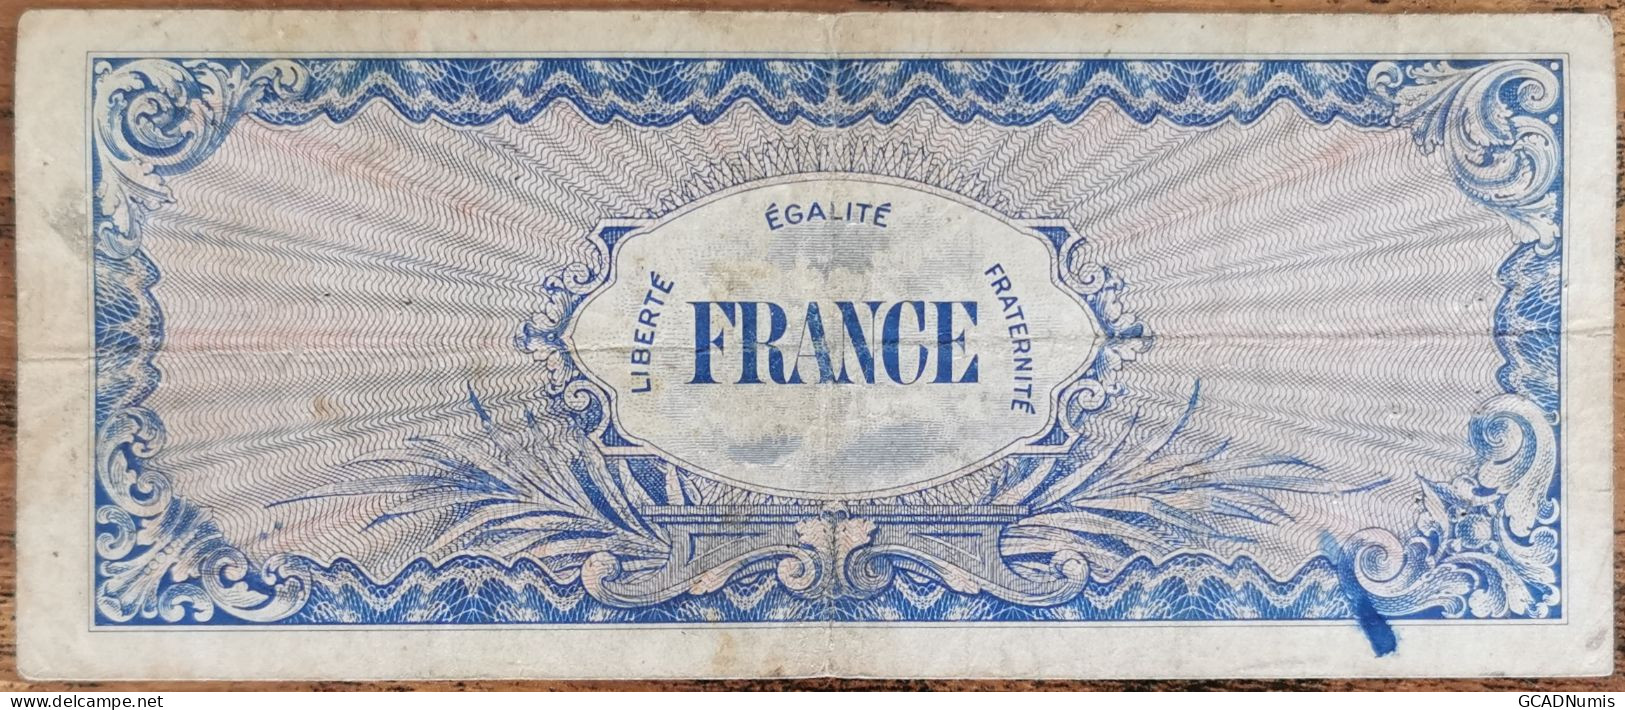 Billet 100 Francs 1944 FRANCE Préparer Par Les USA Pour La Libération Série 7 - 1944 Bandiera/Francia